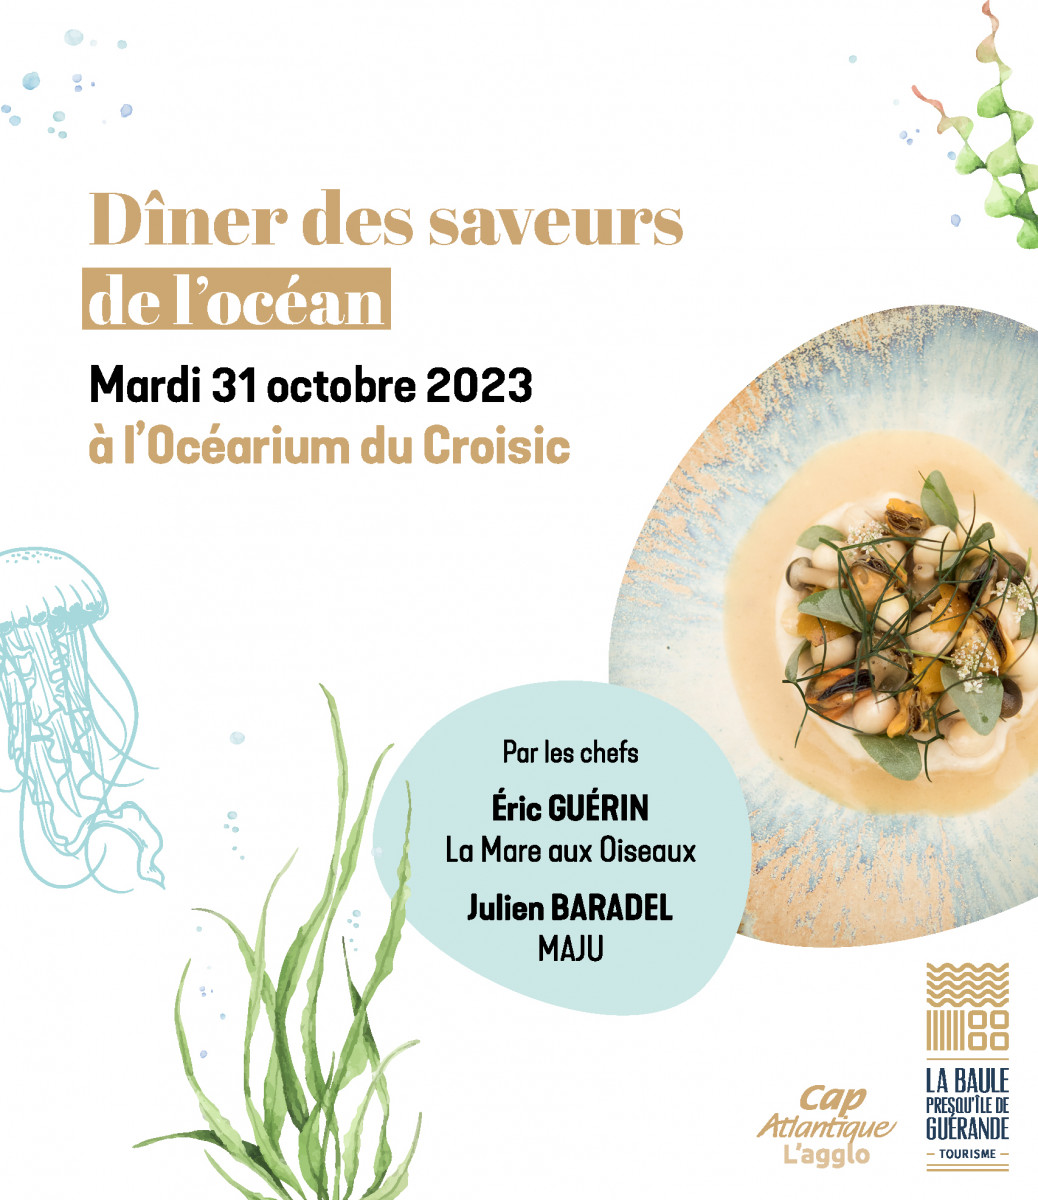 Le dîner des saveurs de l'océan - Saveurs d'octobre 